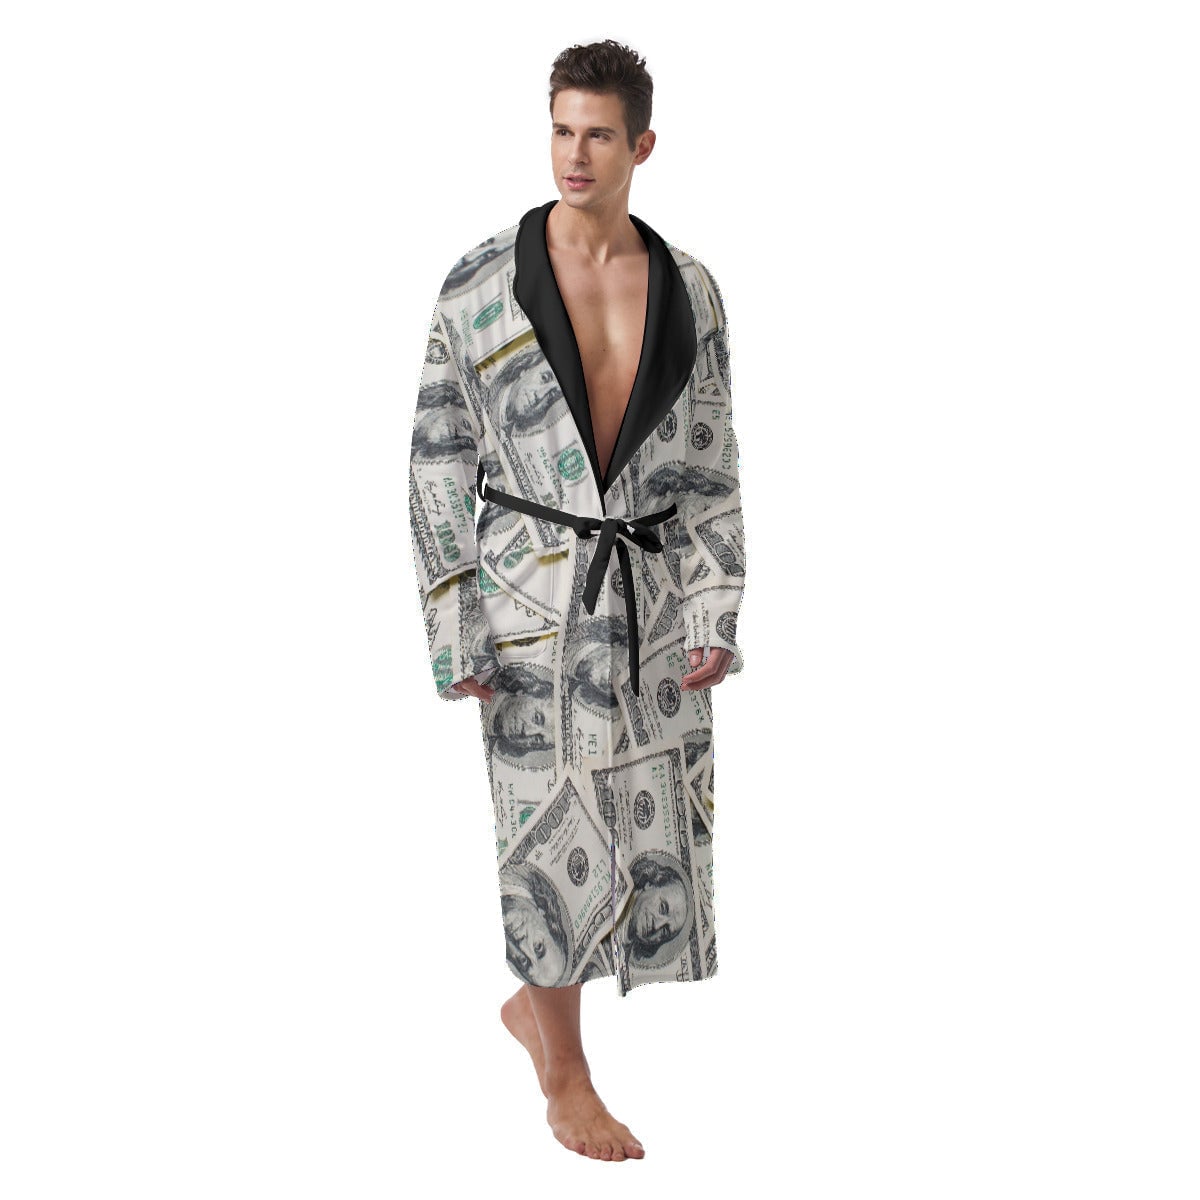 Boss Cash Money Dollars Future Millionaire Heavy Fleece Robe